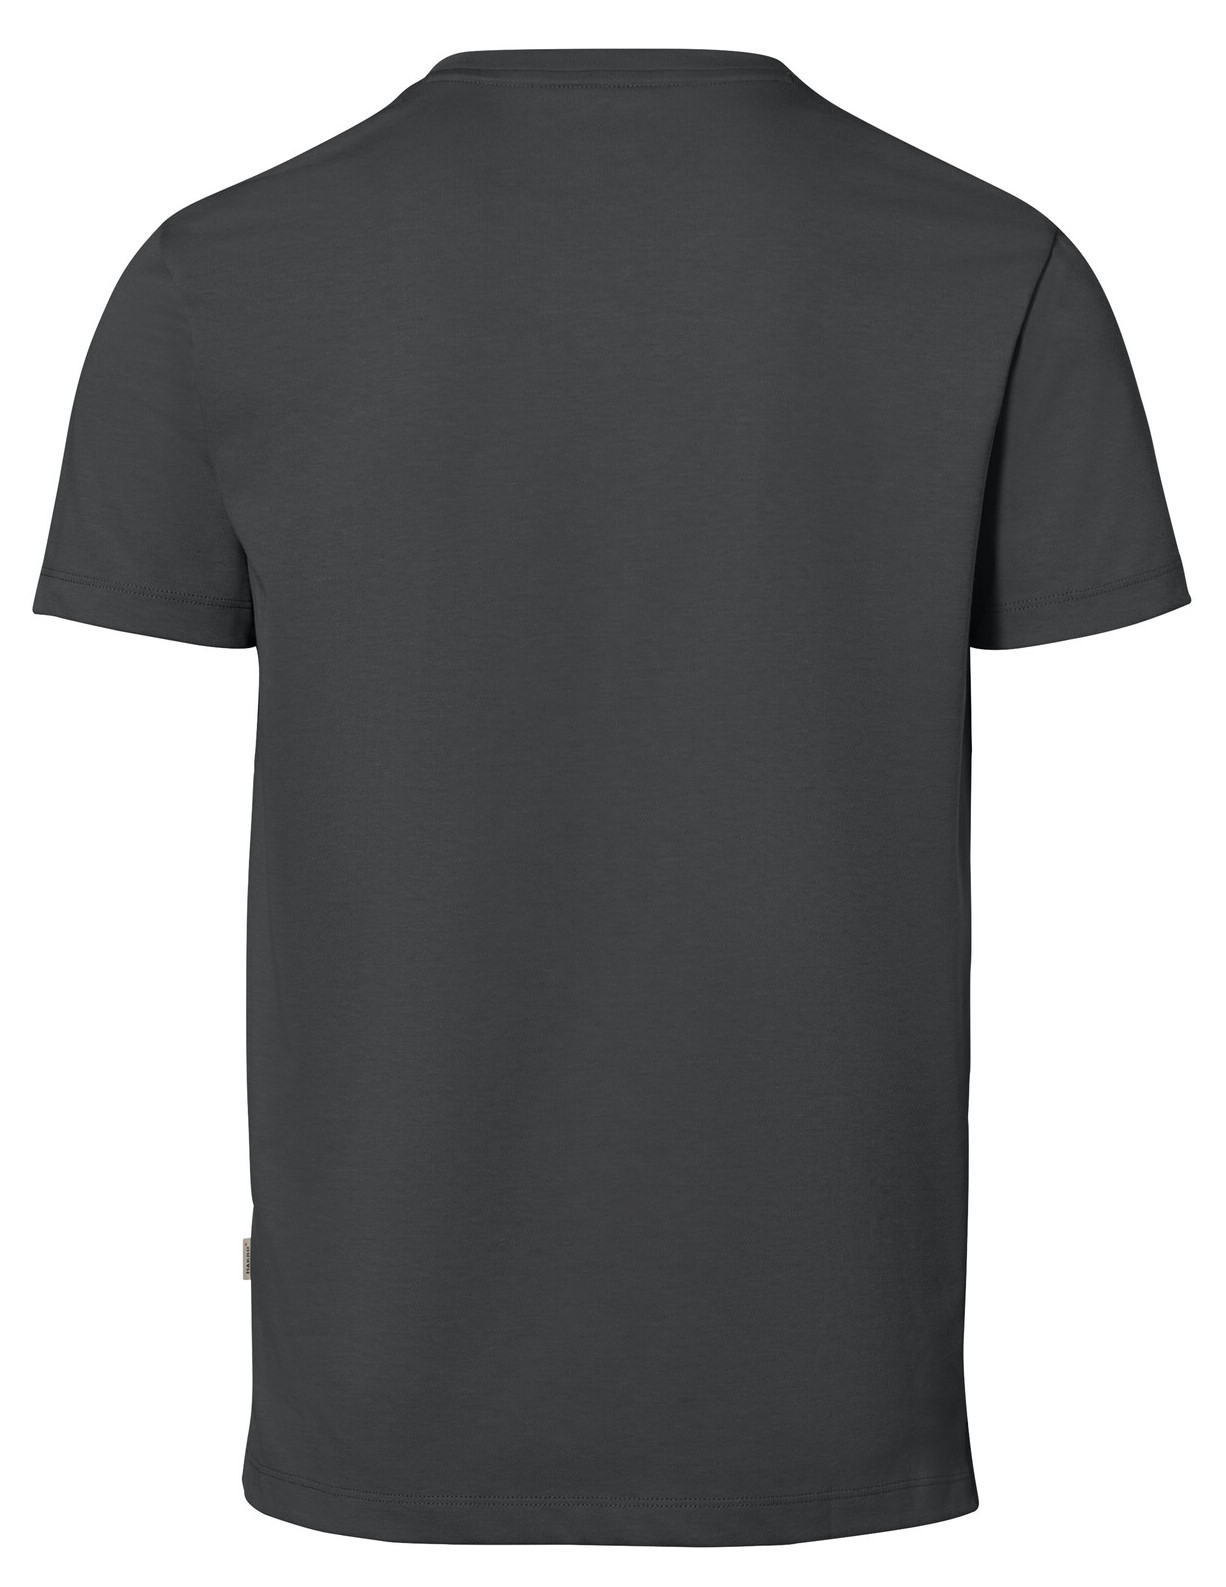 HAKRO T-Shirt 269 Cotton-Tec